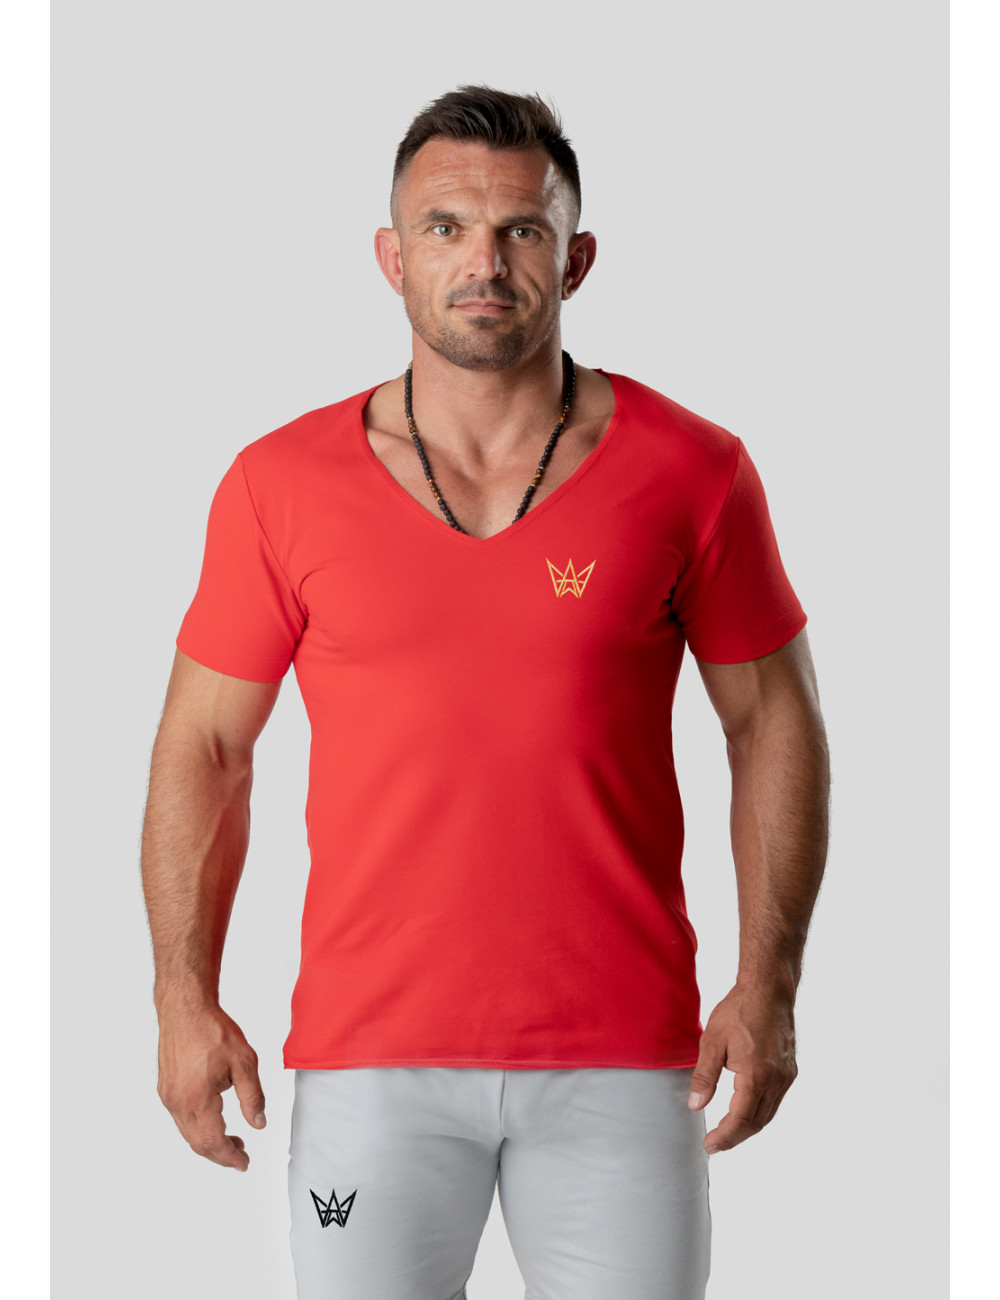 TRES AMIGOS WEAR Man's T-shirt Official Crimson Neckline